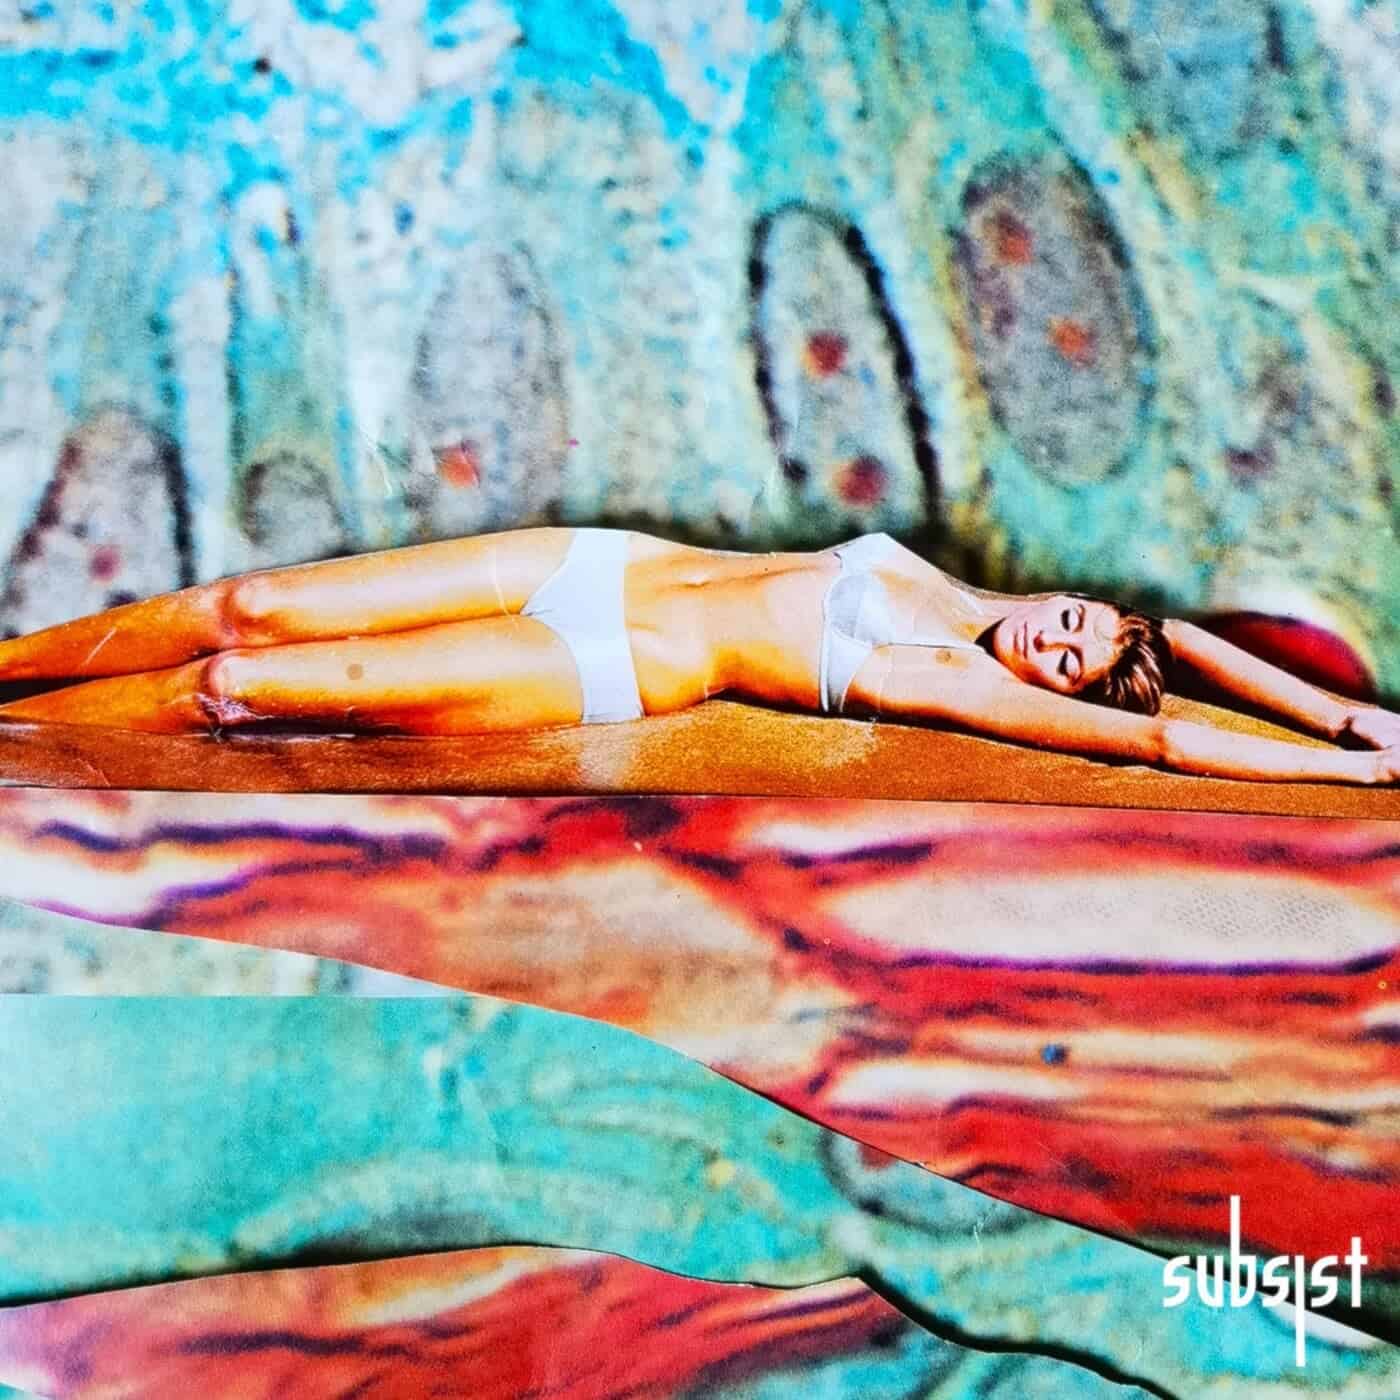 image cover: Paul&Deep - Soul Memories / SUBSIST178D